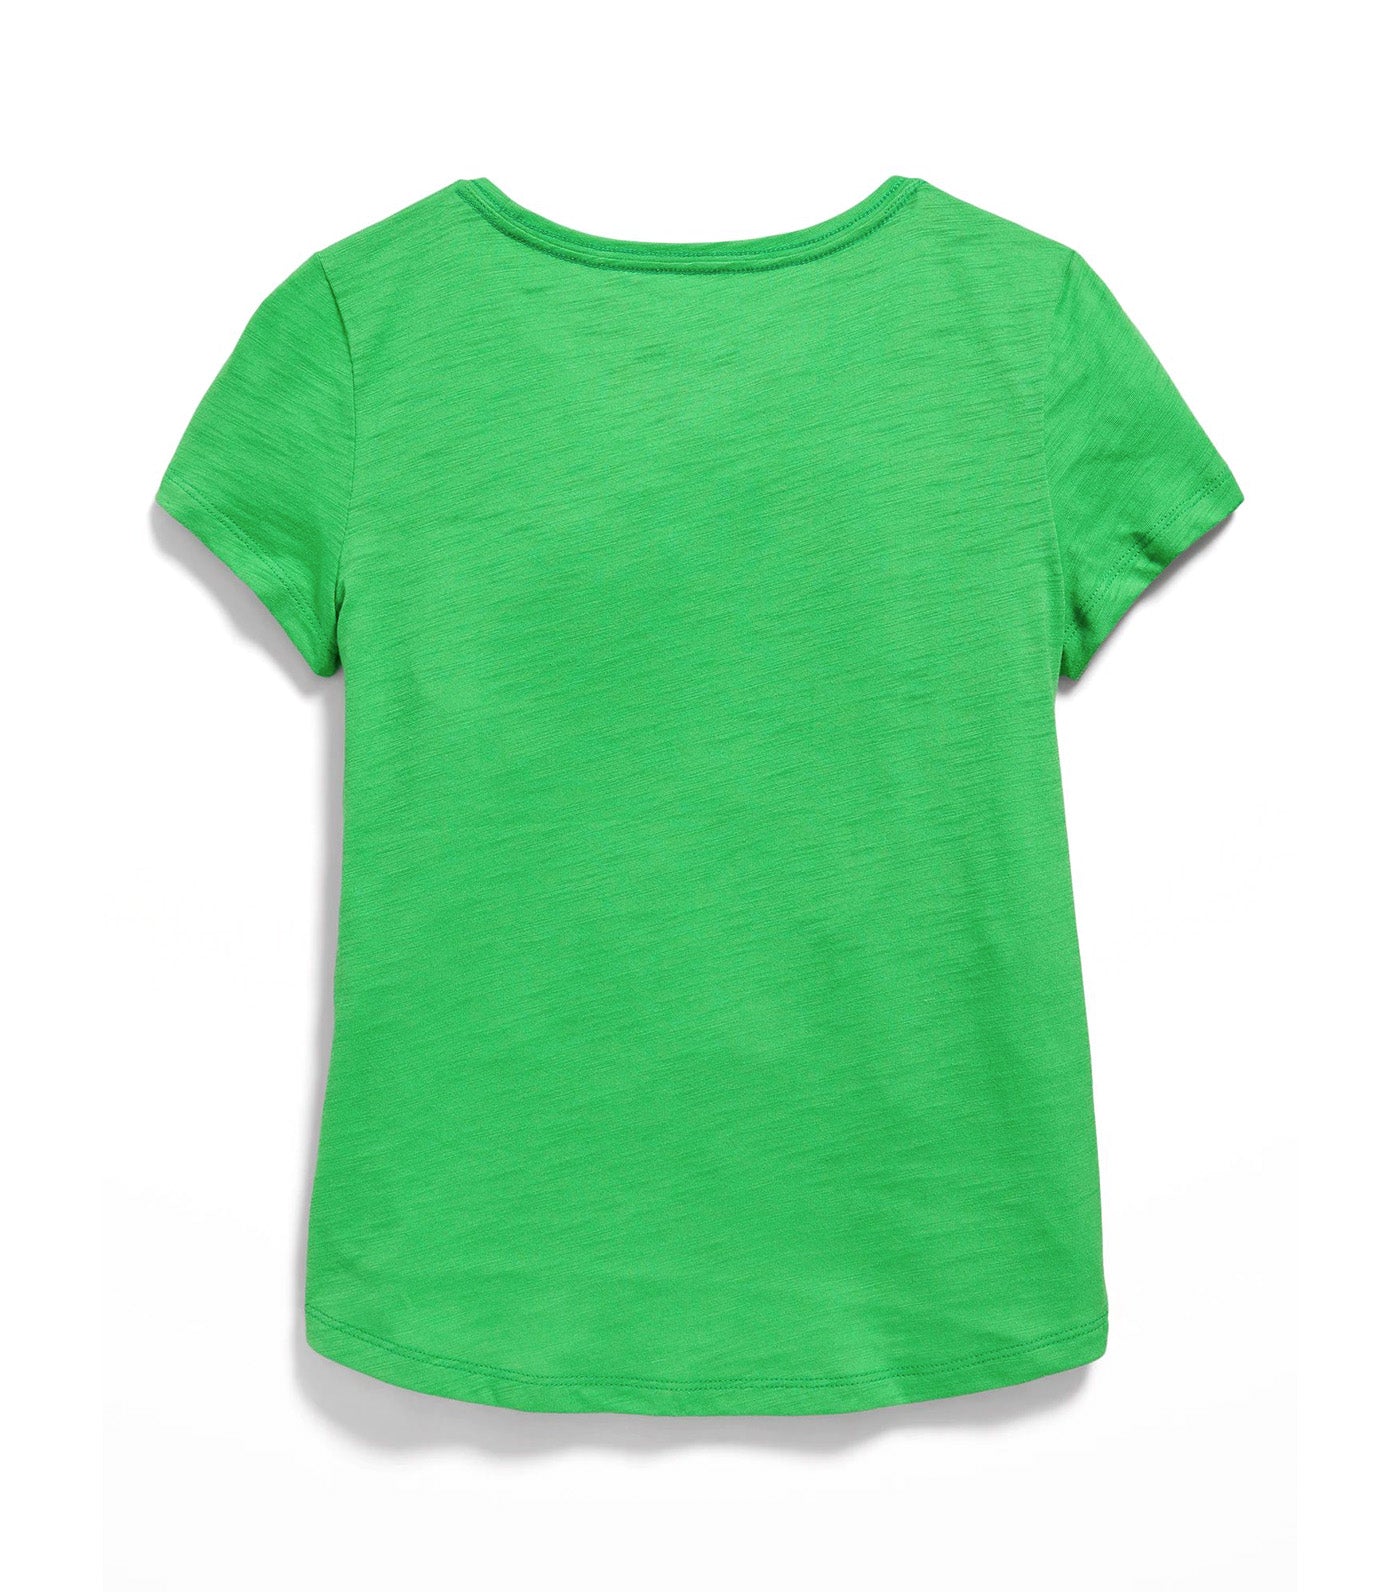 Softest Heart-Pocket T-Shirt for Girls - Chrysalis